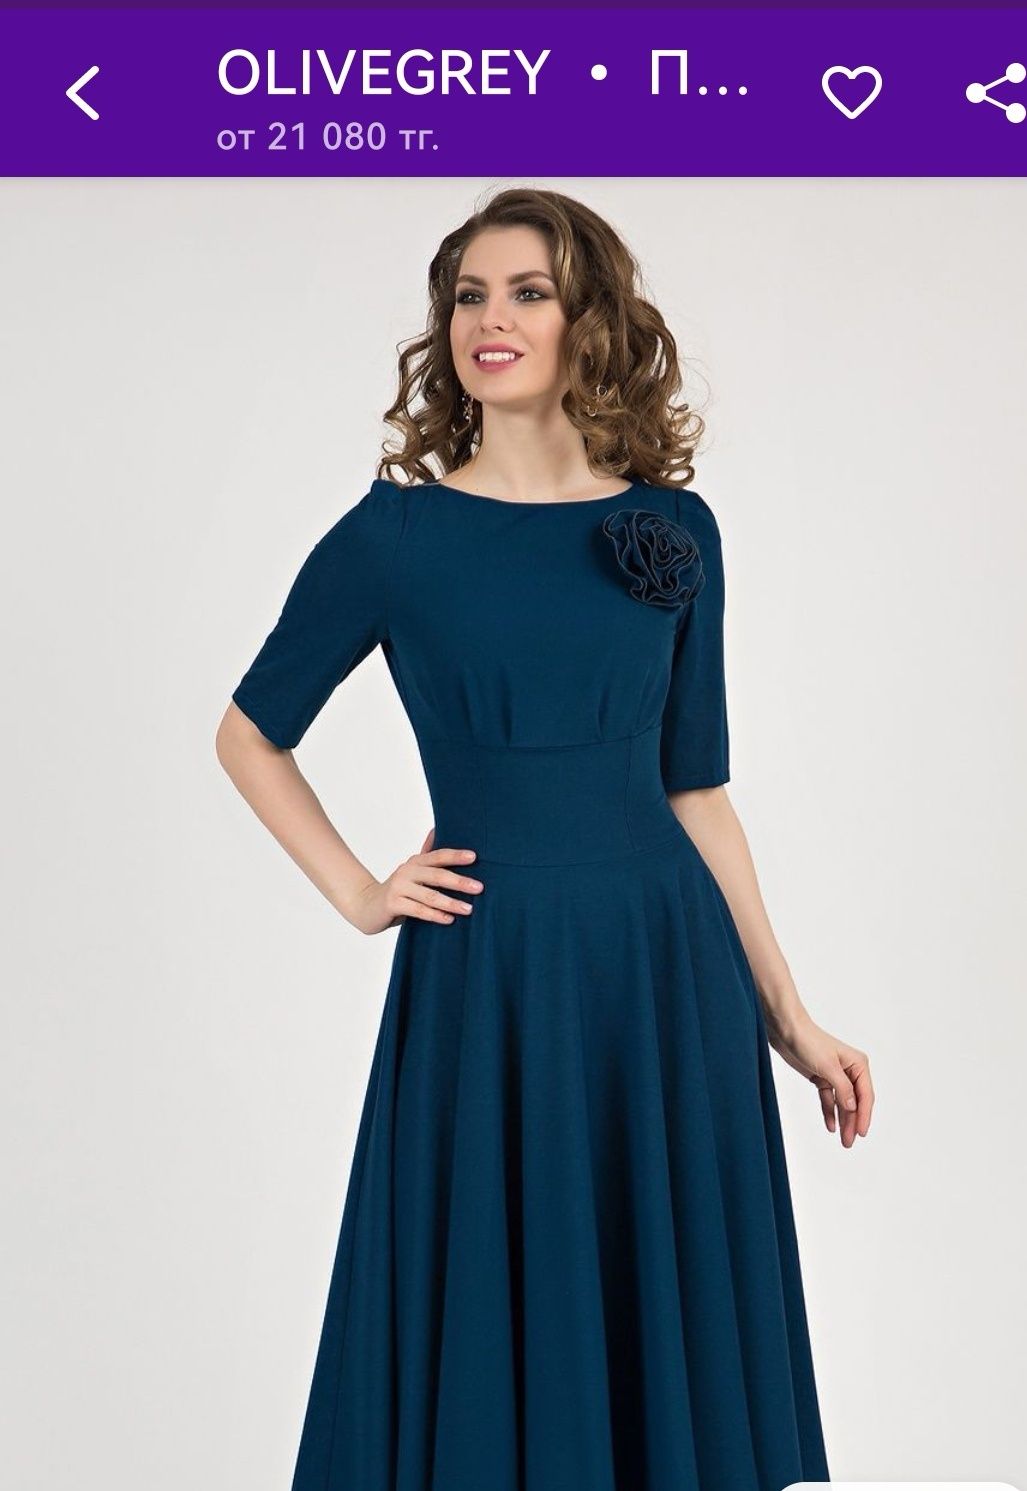 Женское платье новое производство Россия, ткань вискоза, размер 48-50